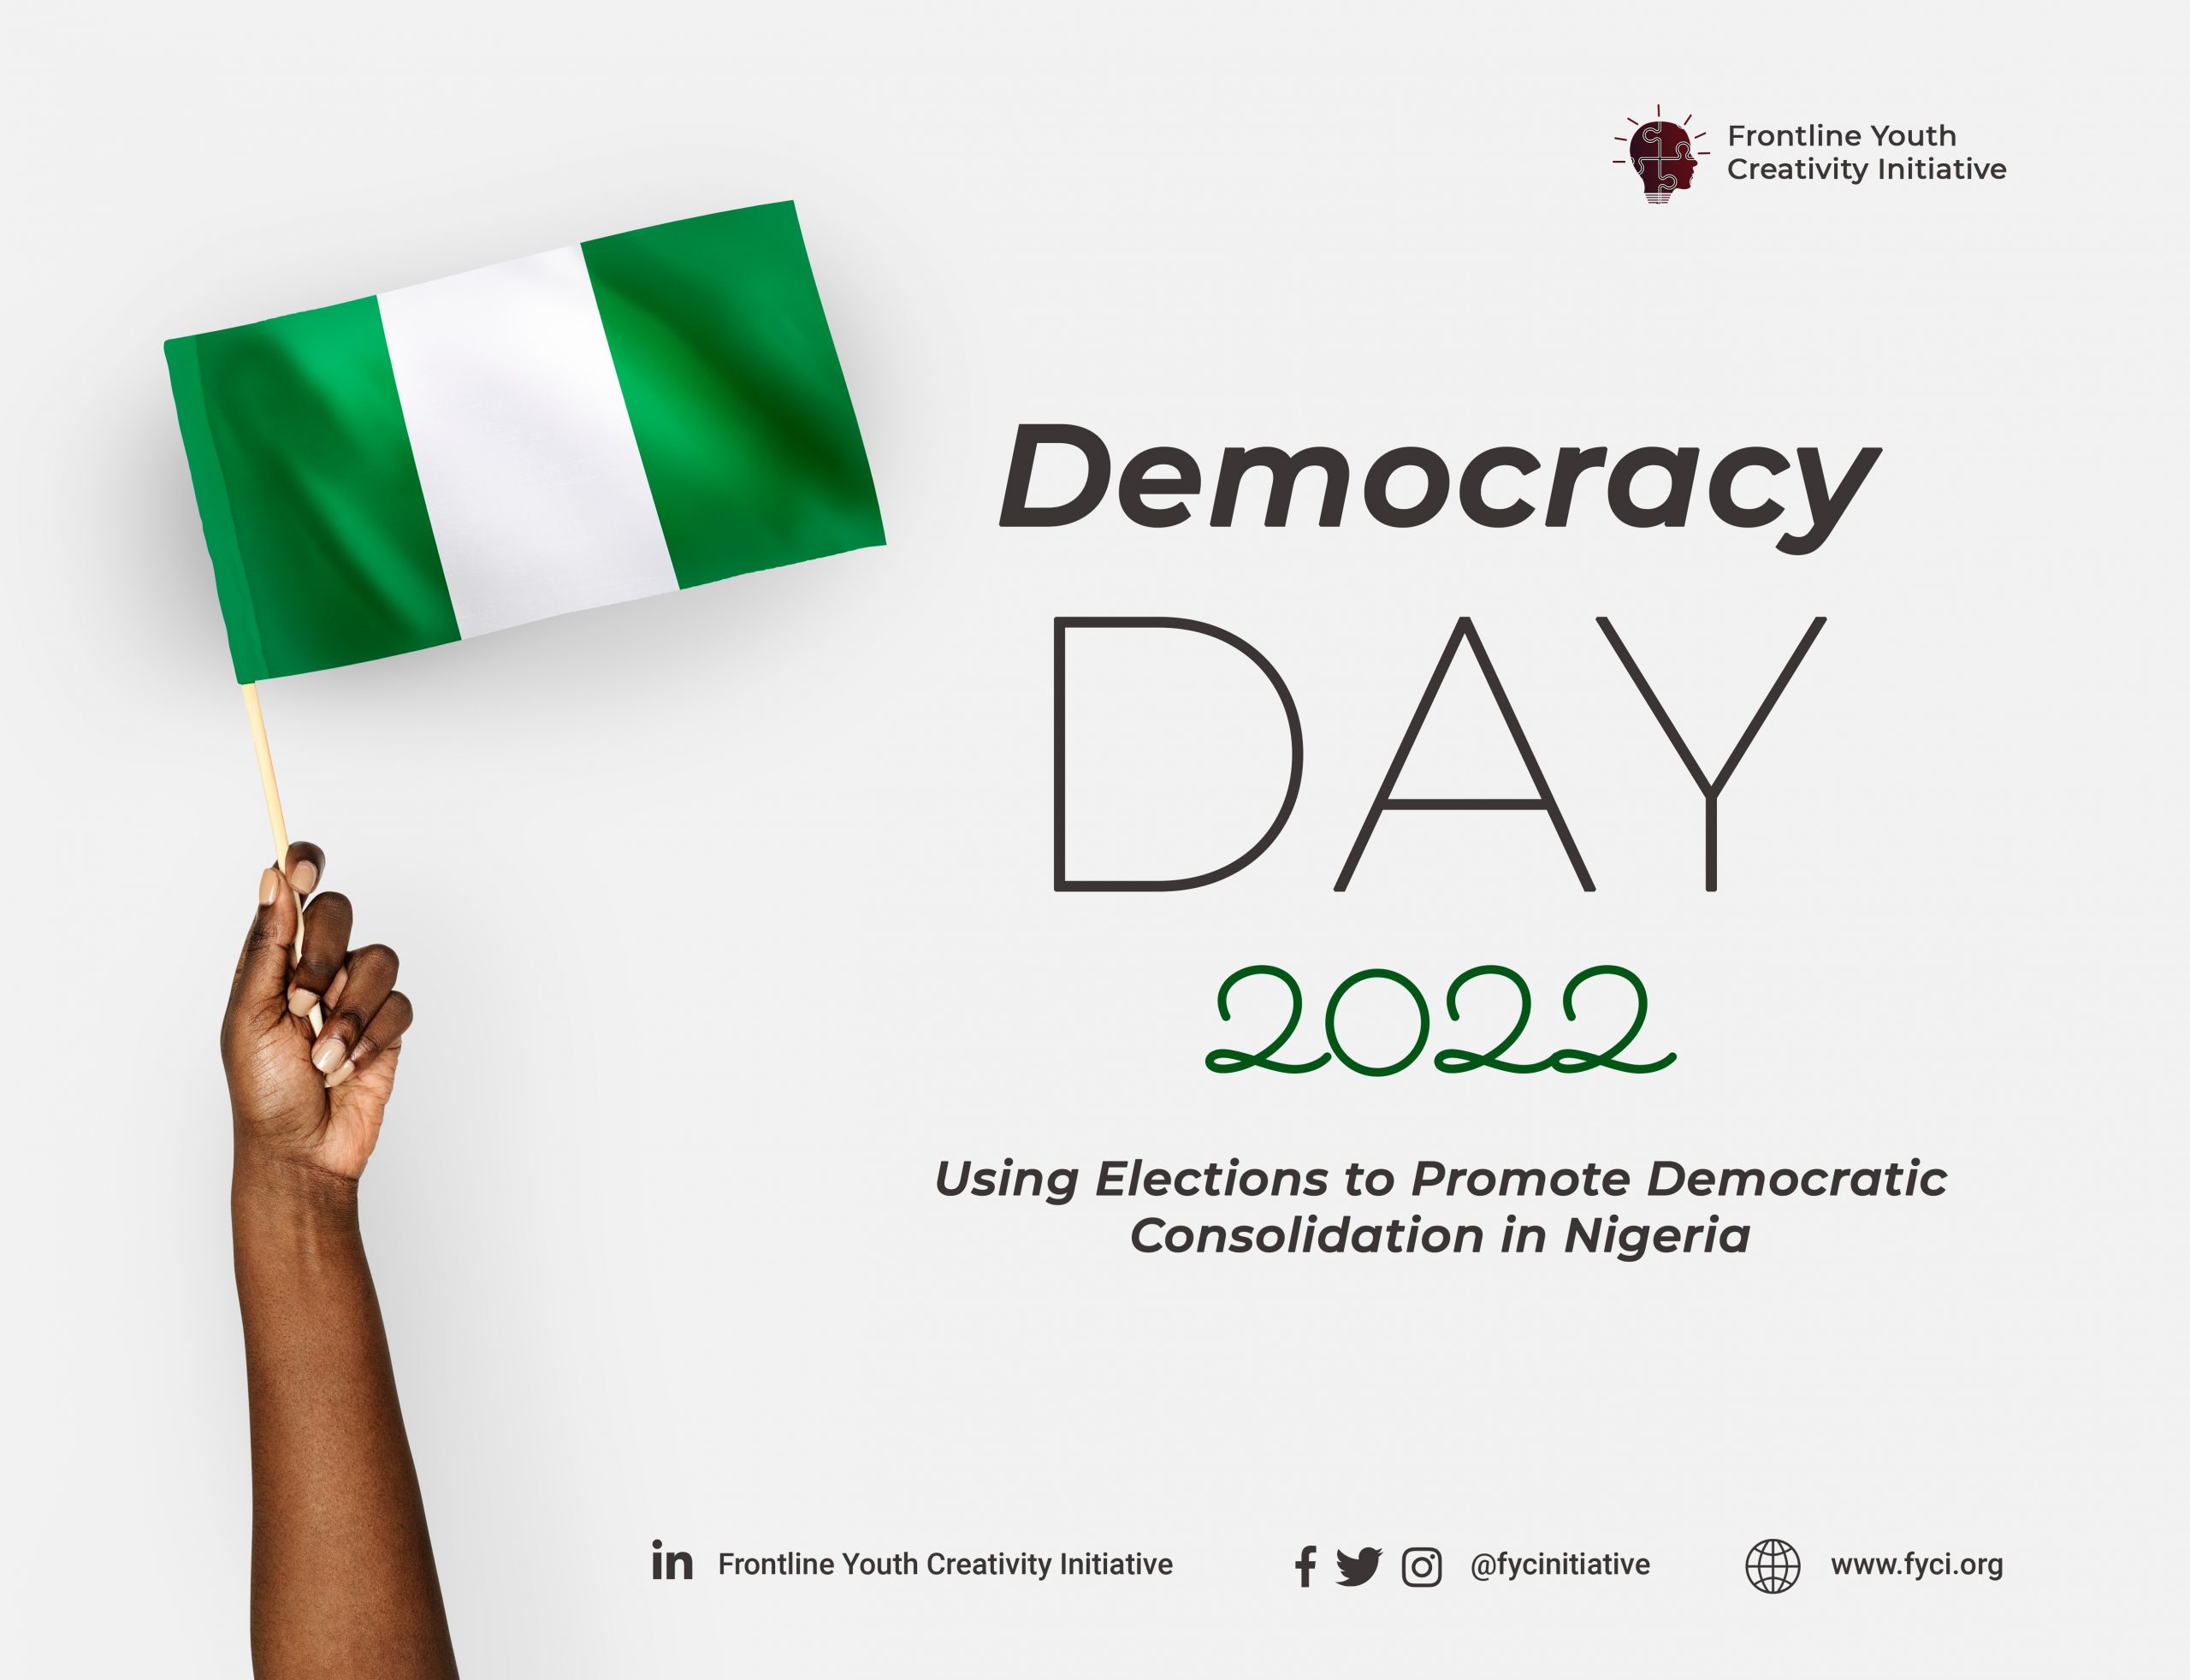 Democracy Day 2022